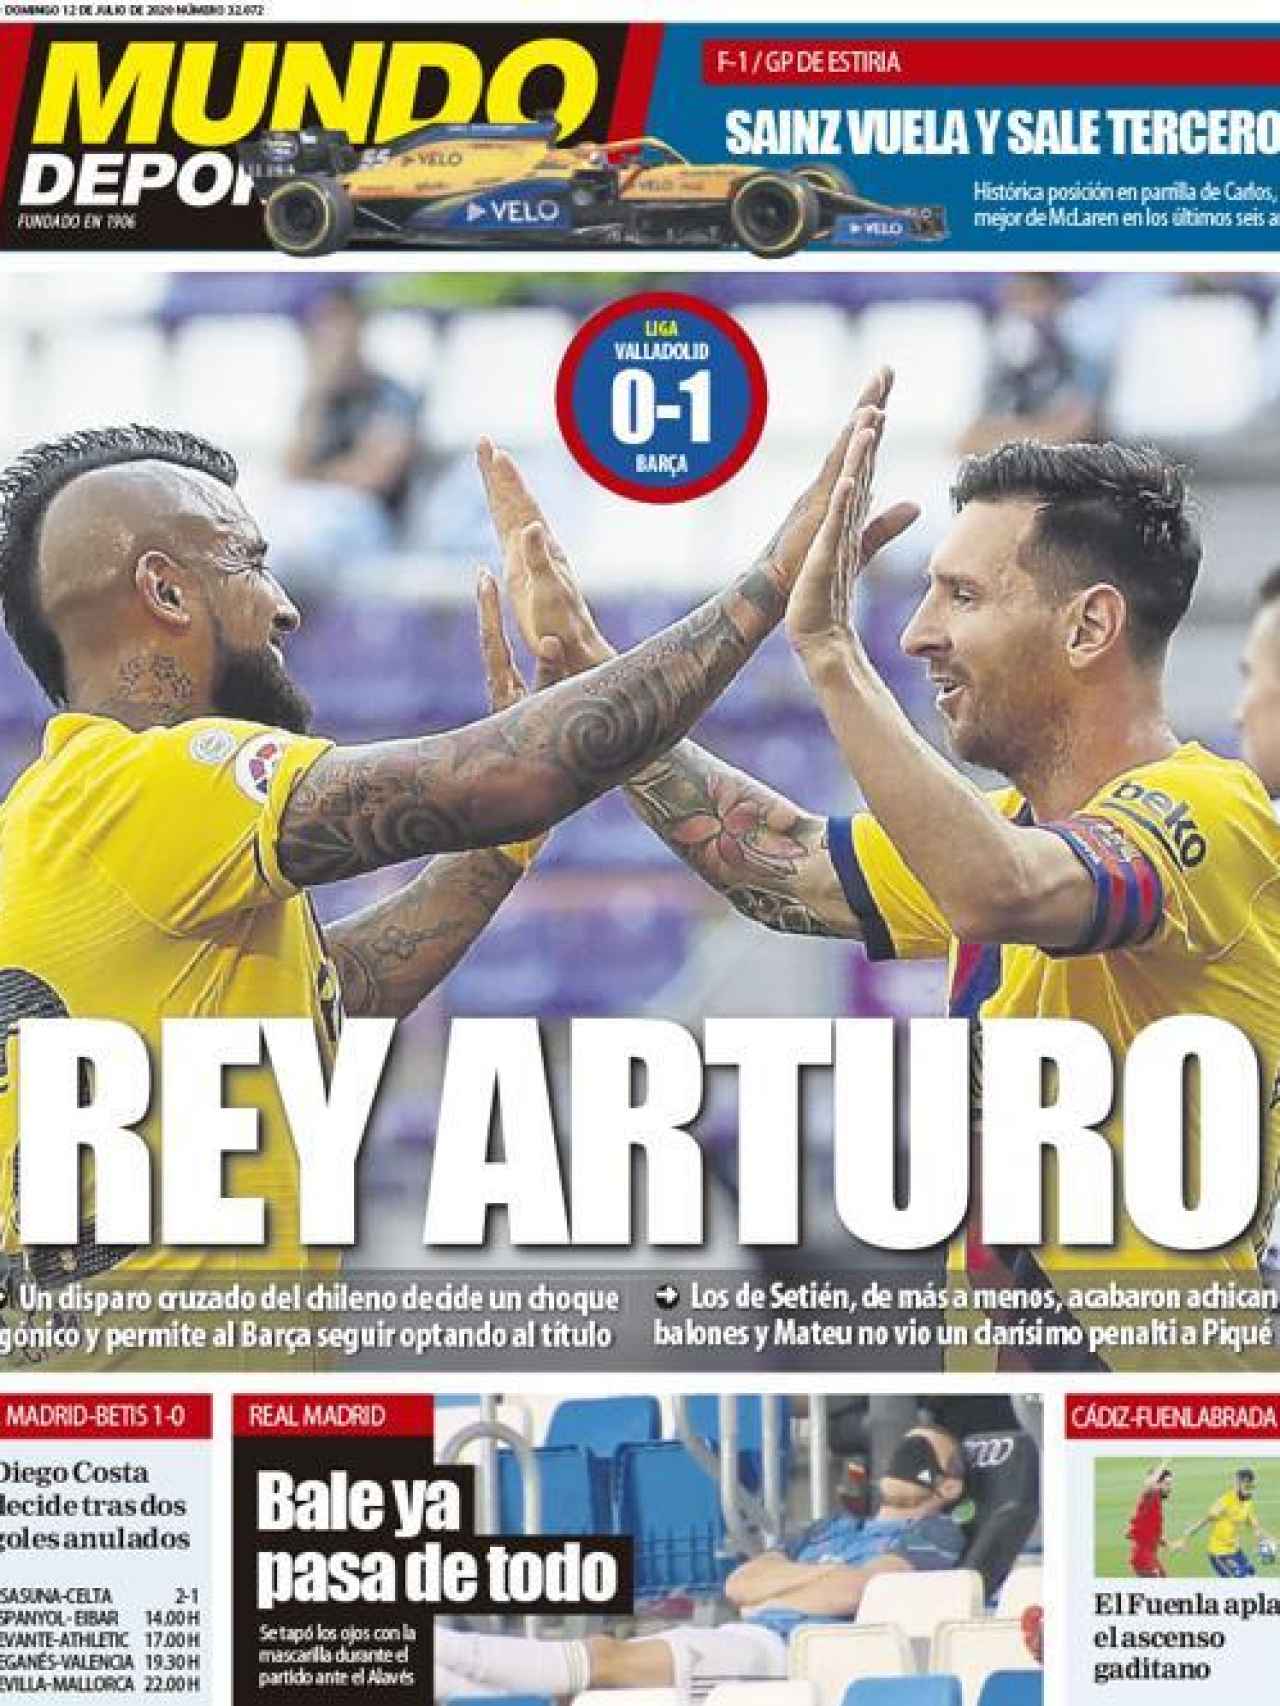 La portada del diario Mundo Deportivo (12/07/2020)